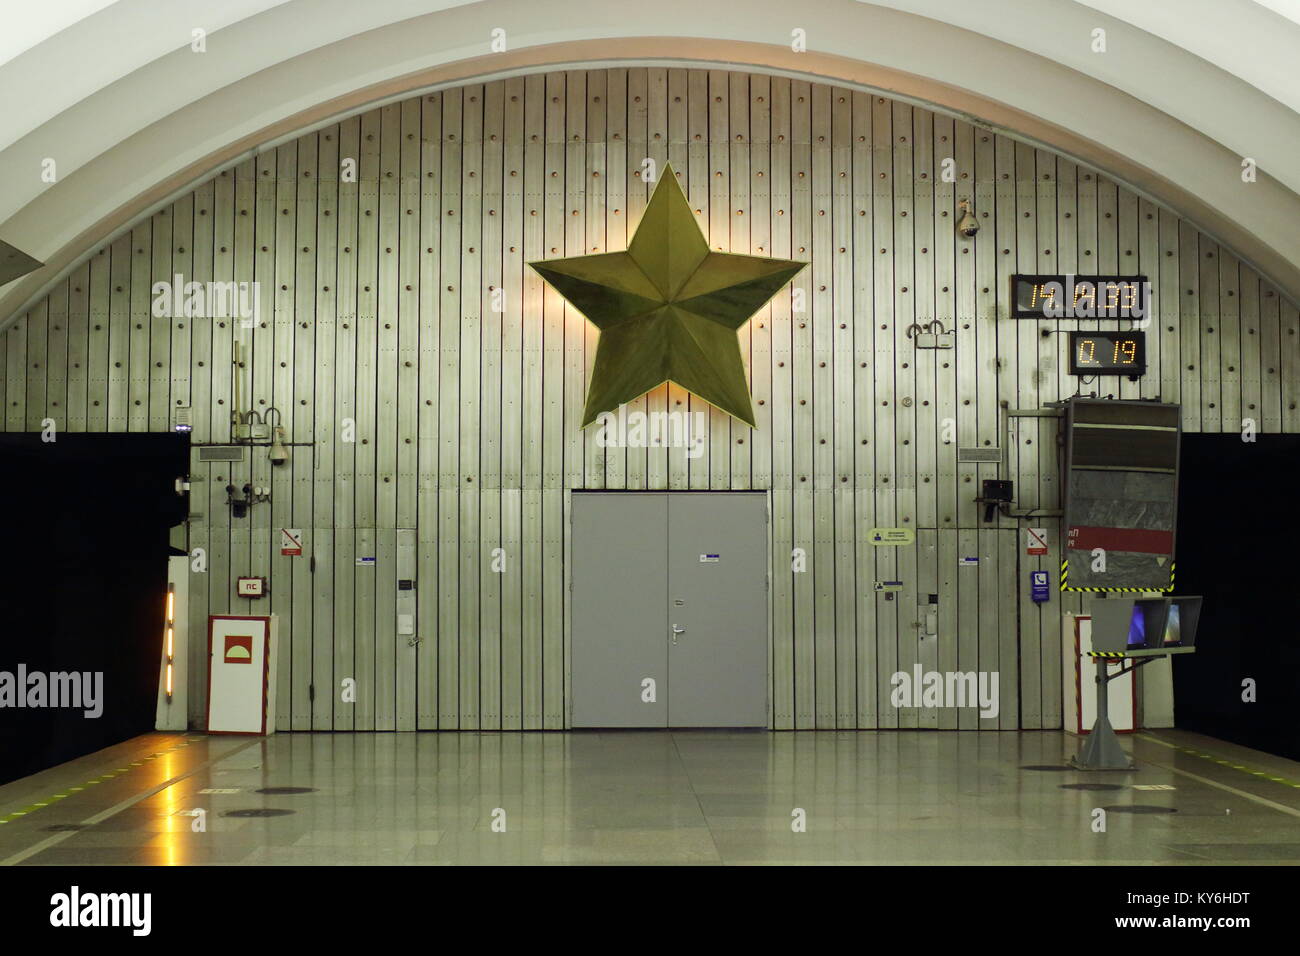 La stazione della metropolitana stella a cinque punte nella parete del tunnel della metropolitana simbolo di Satana Foto Stock